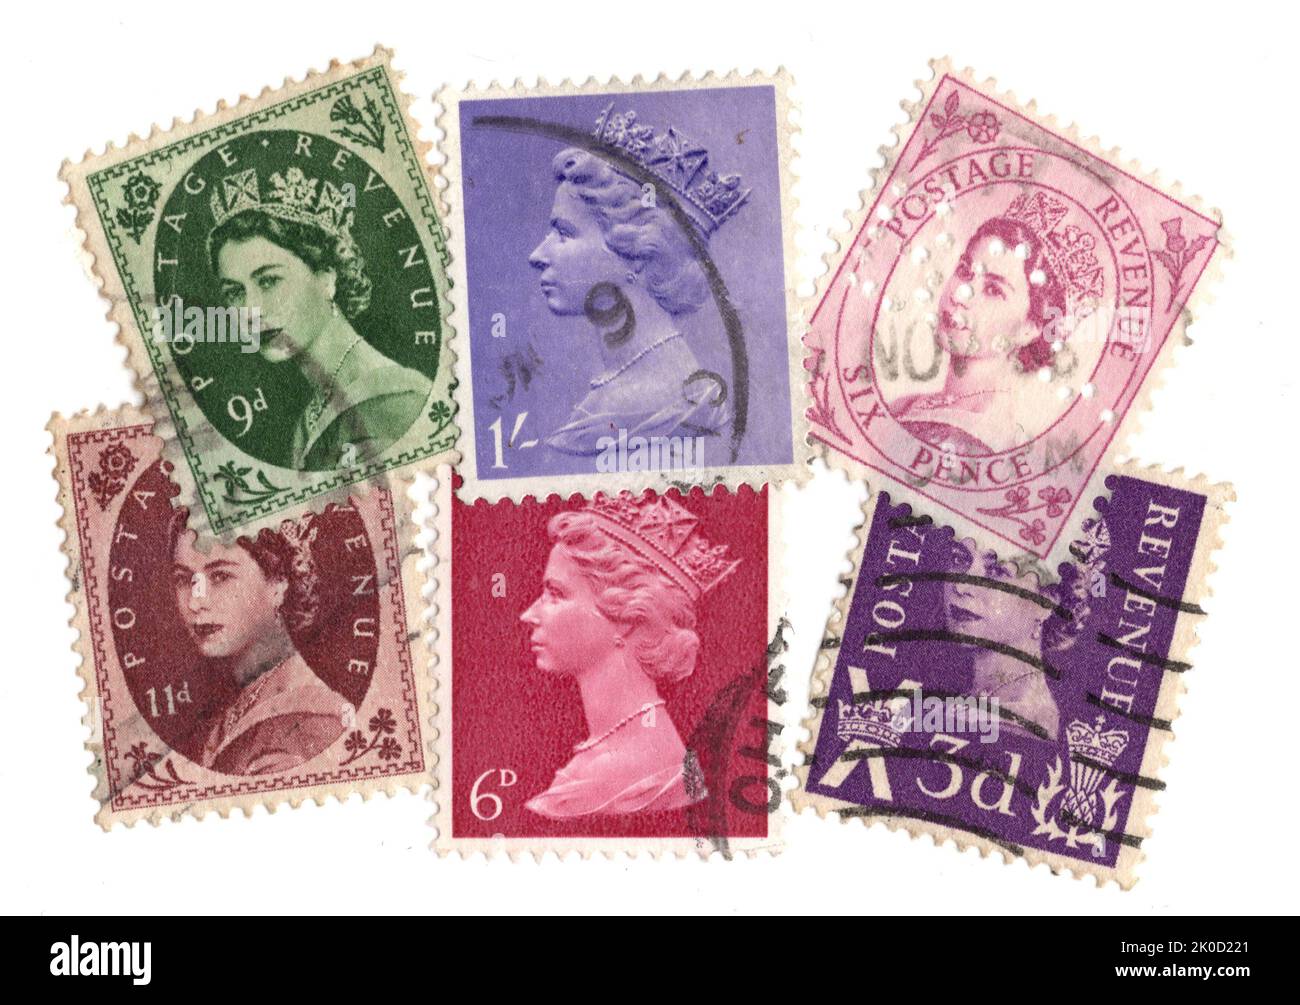 Un montage de timbres-poste de Grande-Bretagne avec la reine Elizabeth II sur fond blanc. Banque D'Images